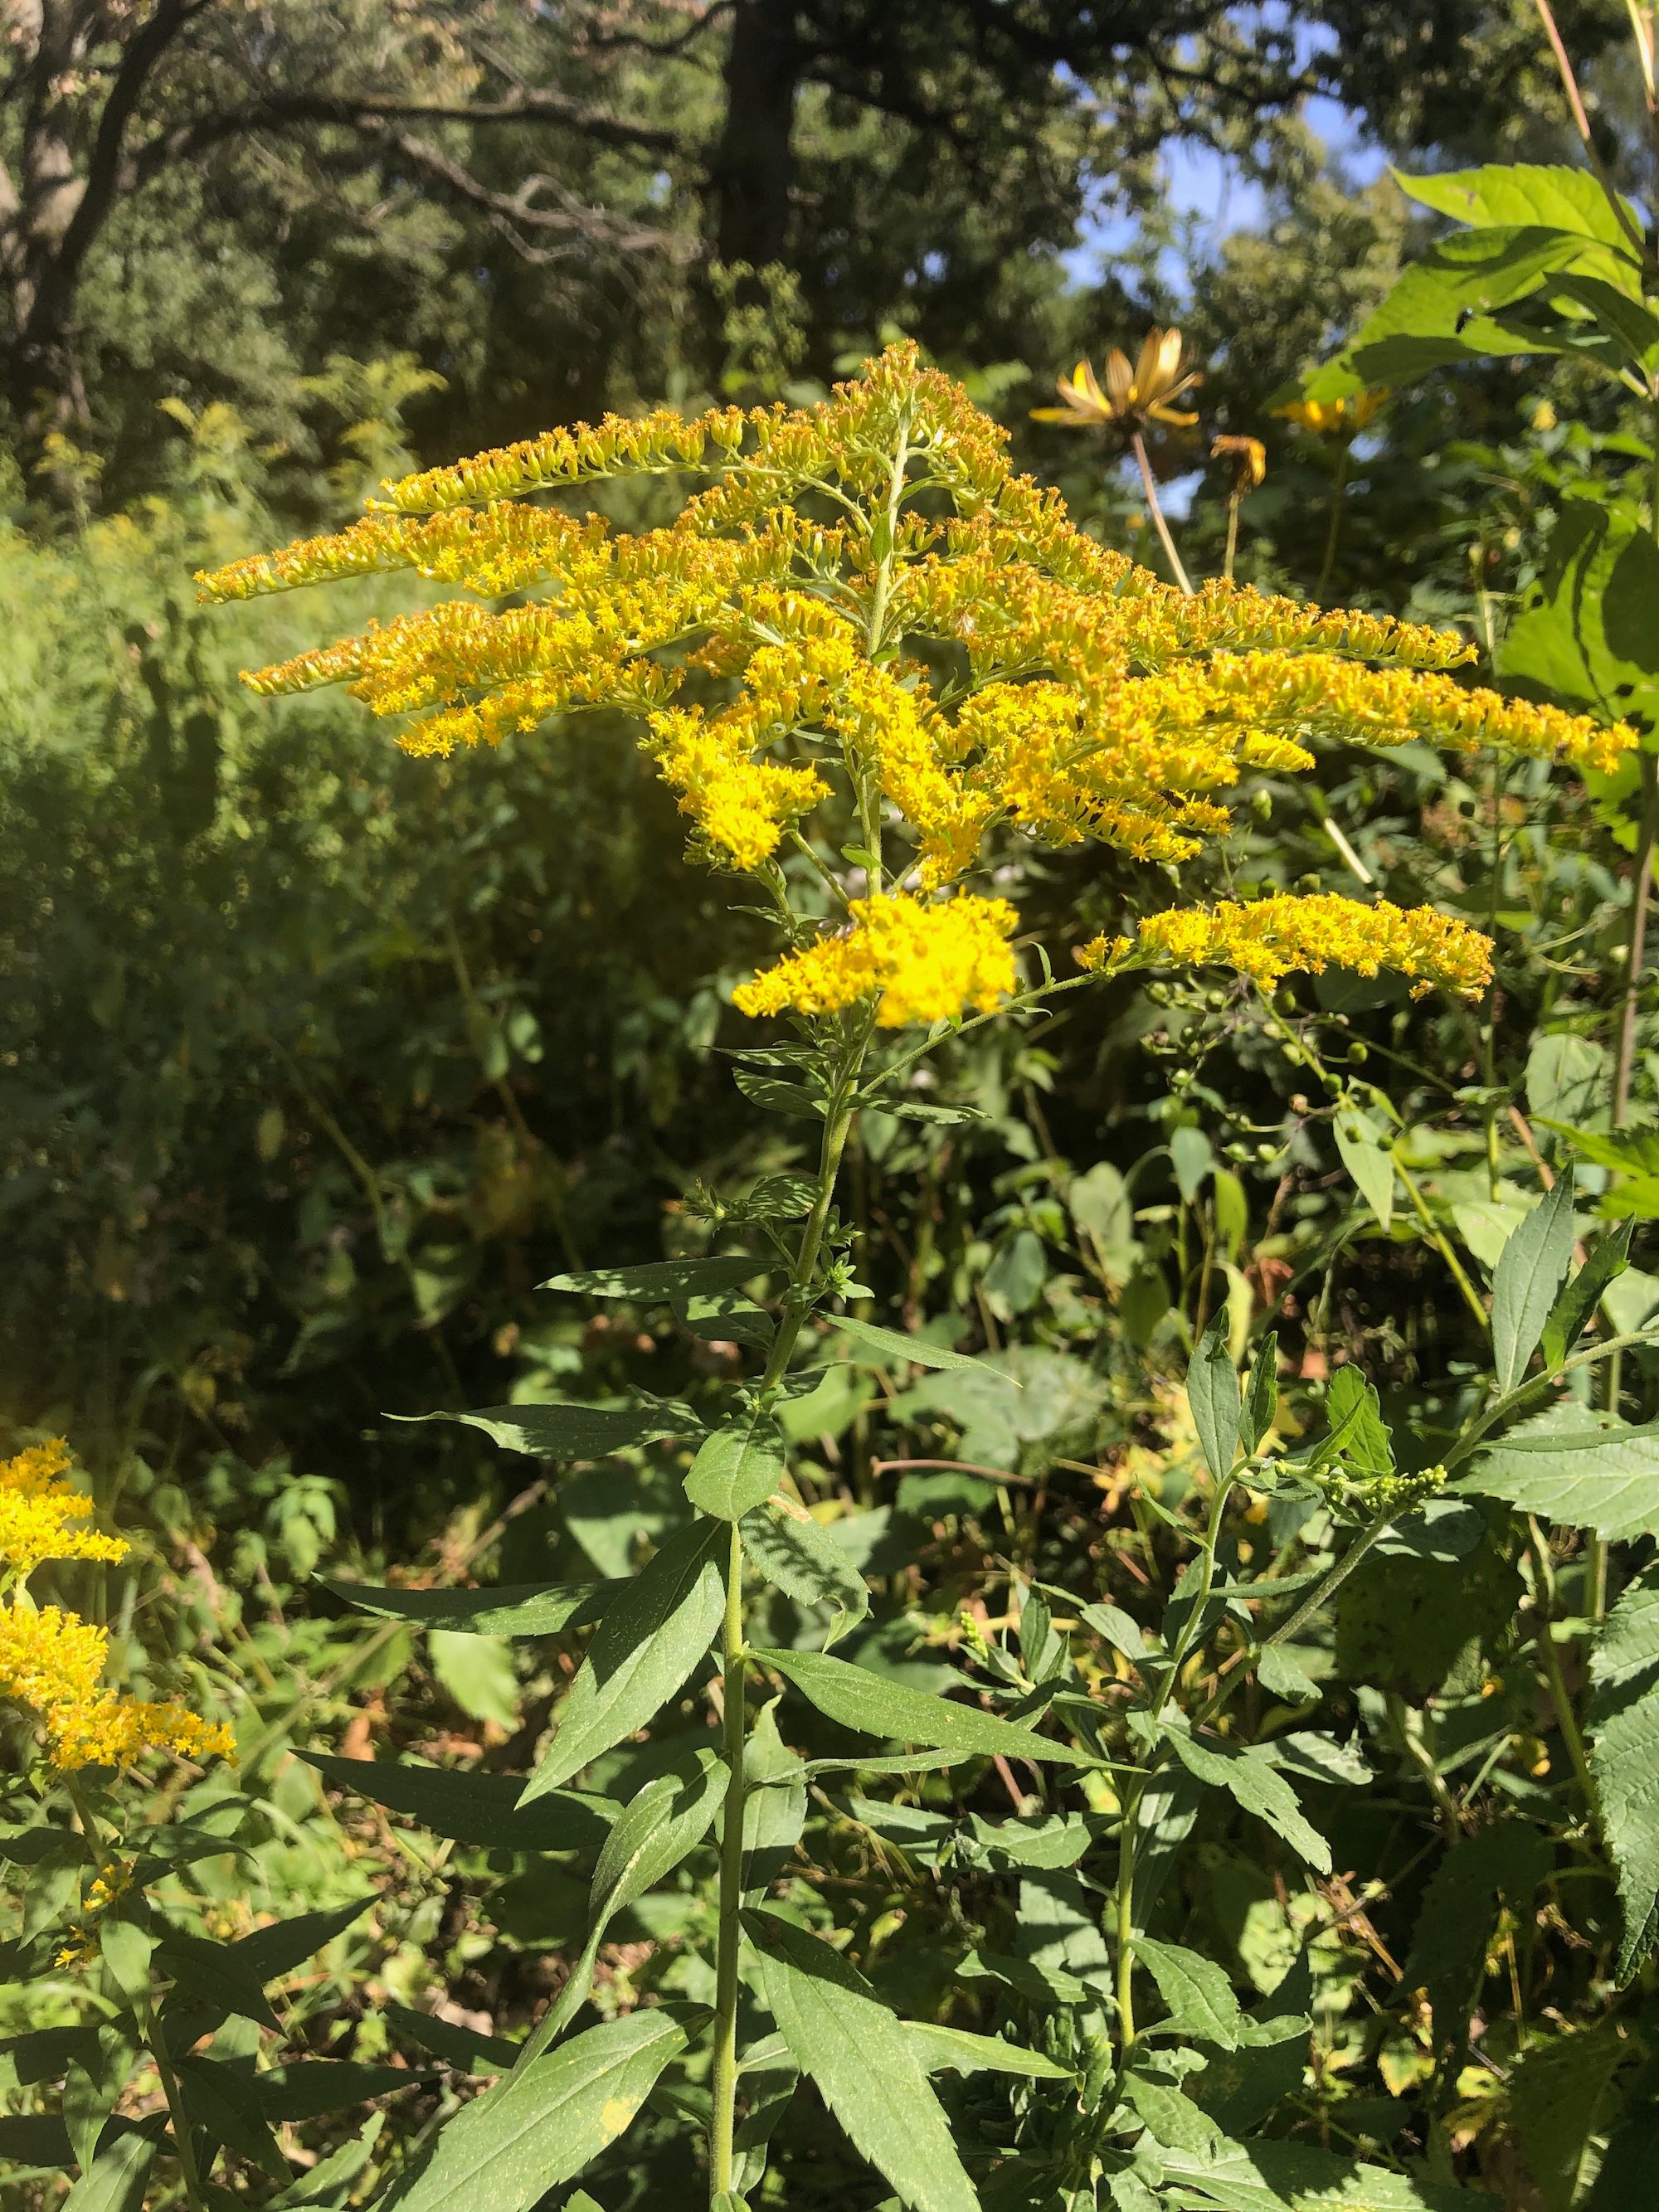 Goldenrod in UW Arboretum on August 20, 2020.